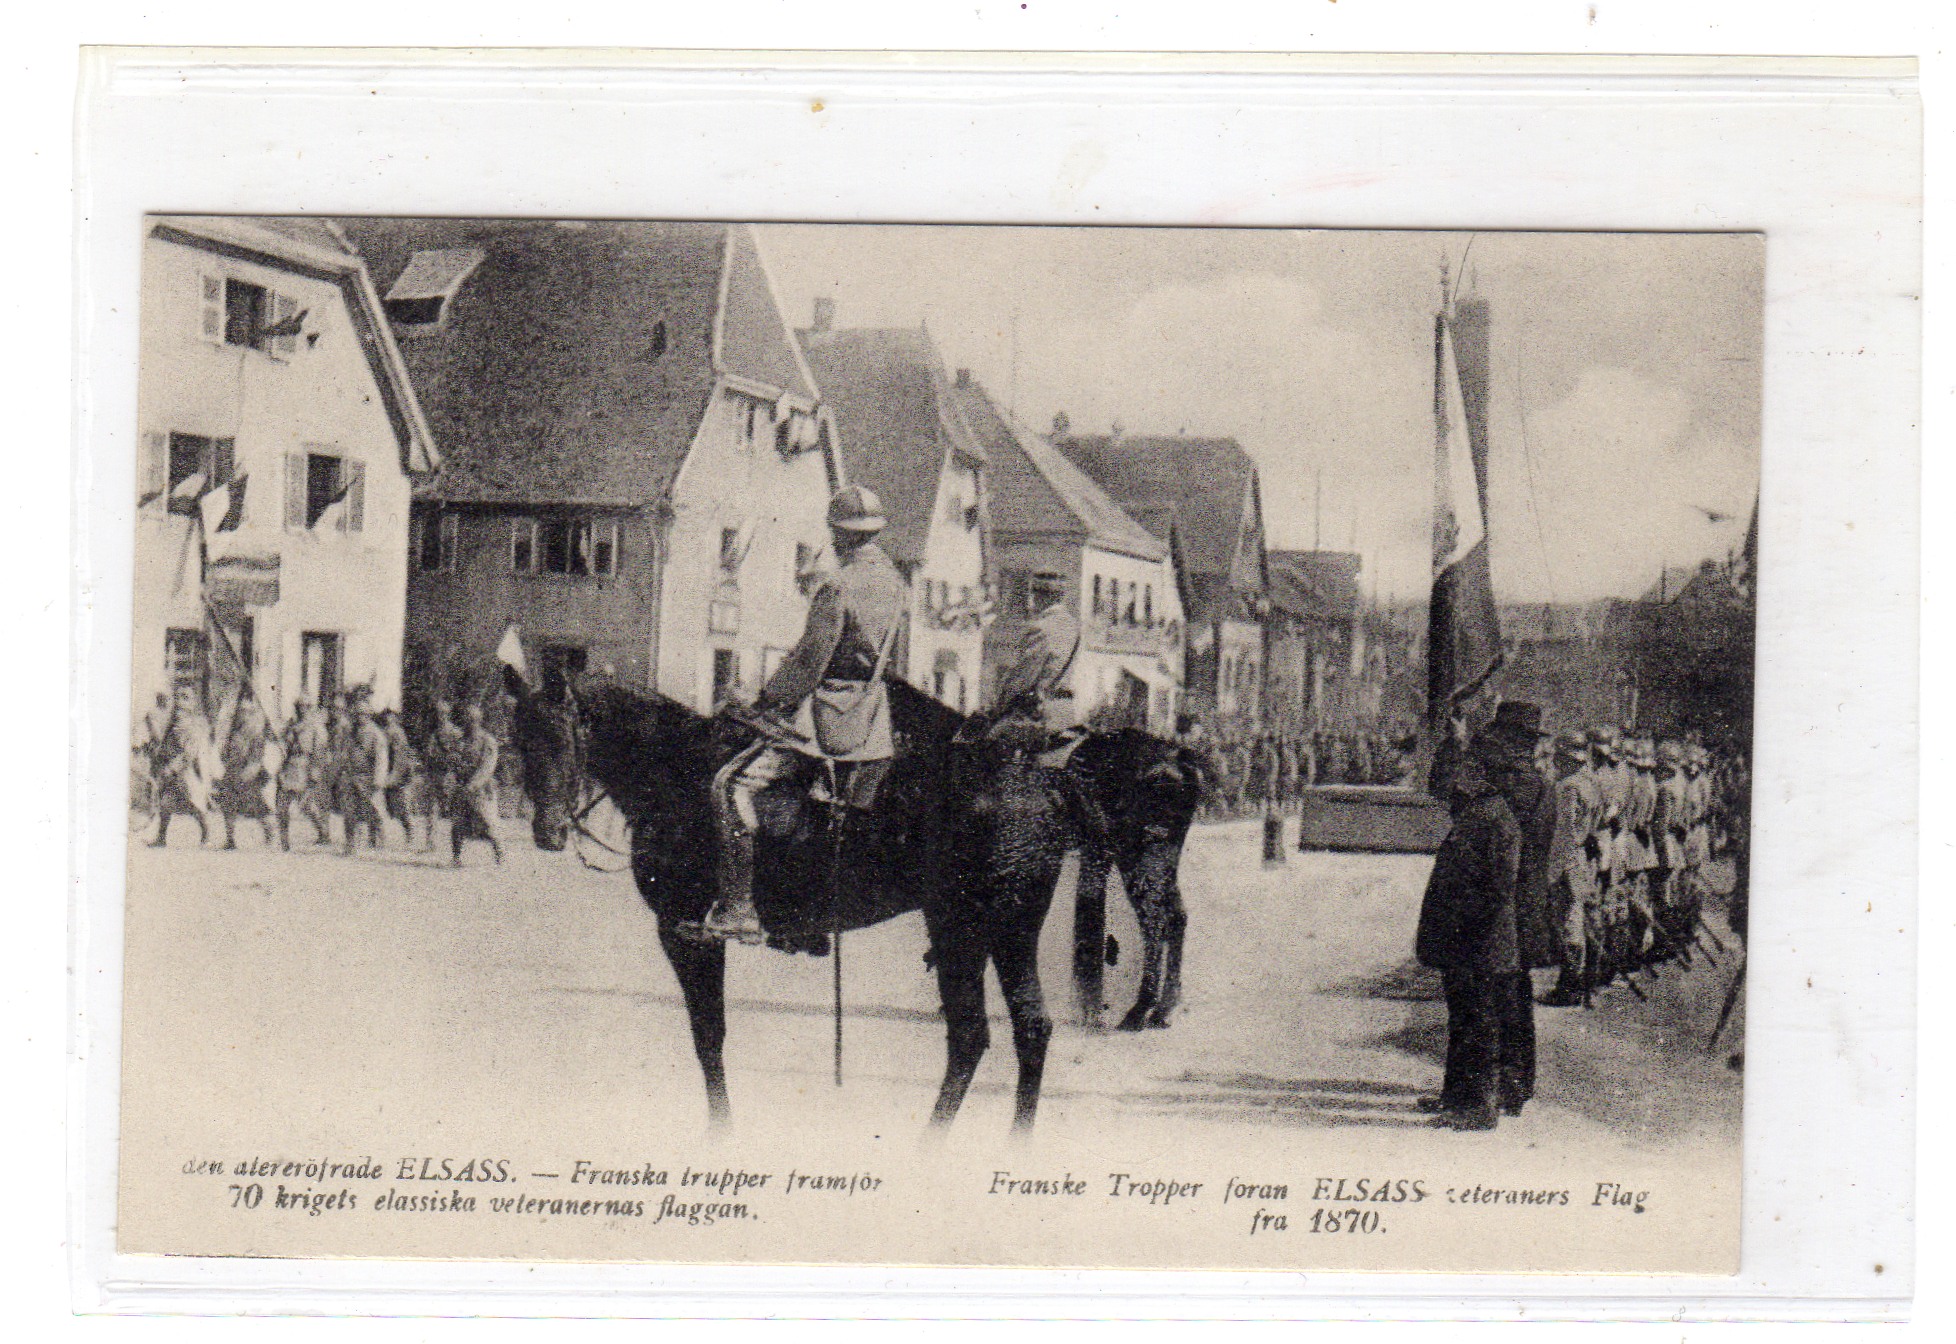 Franske tropper foran Elsass veteraners flagg 1870